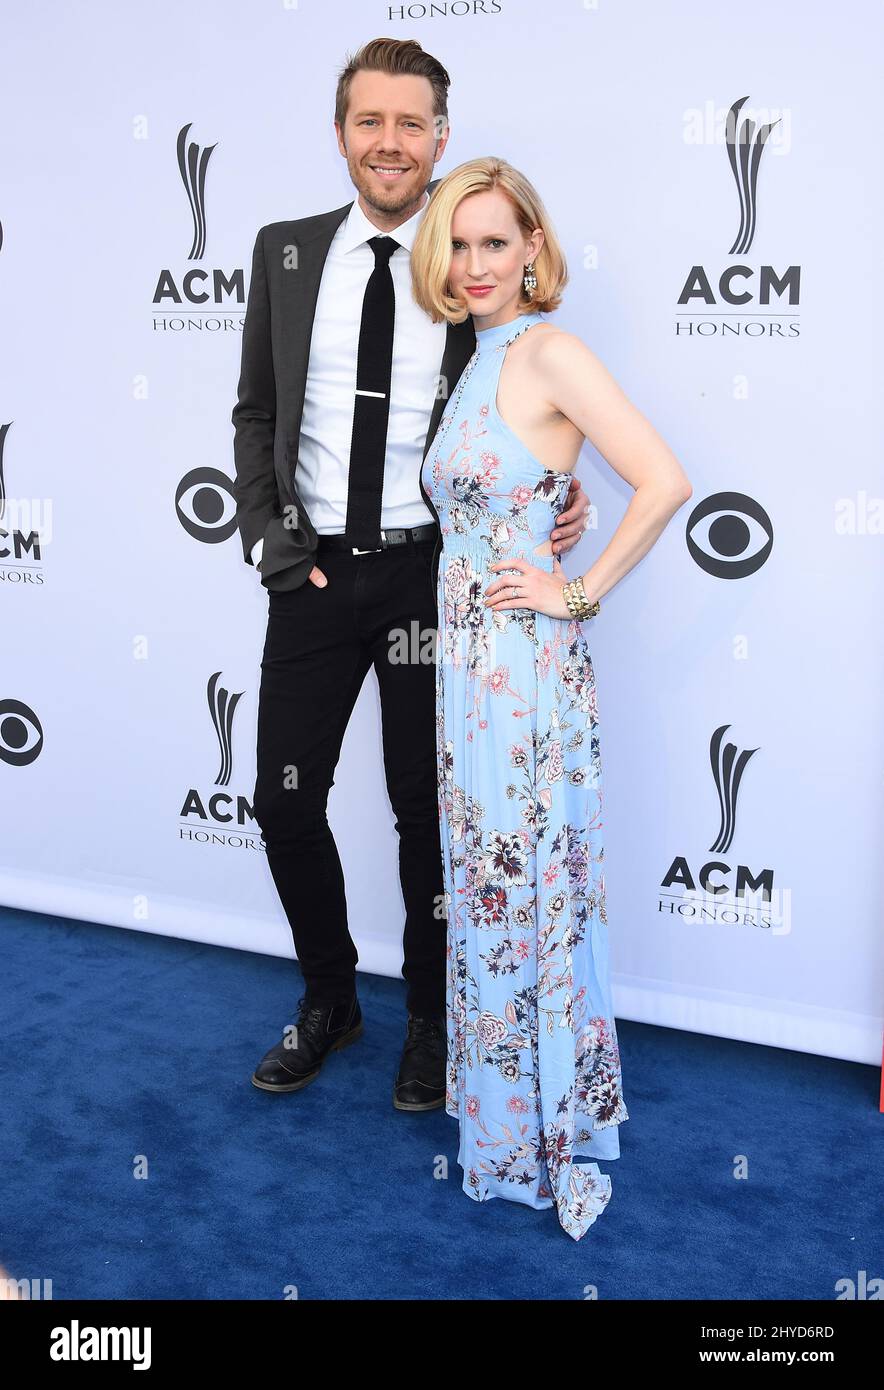 Danny Rader e Leah Rader hanno partecipato ai 11th Annual ACM Music Awards, che si sono tenuti al Ryman Auditorium di Nashville, Tennessee Foto Stock